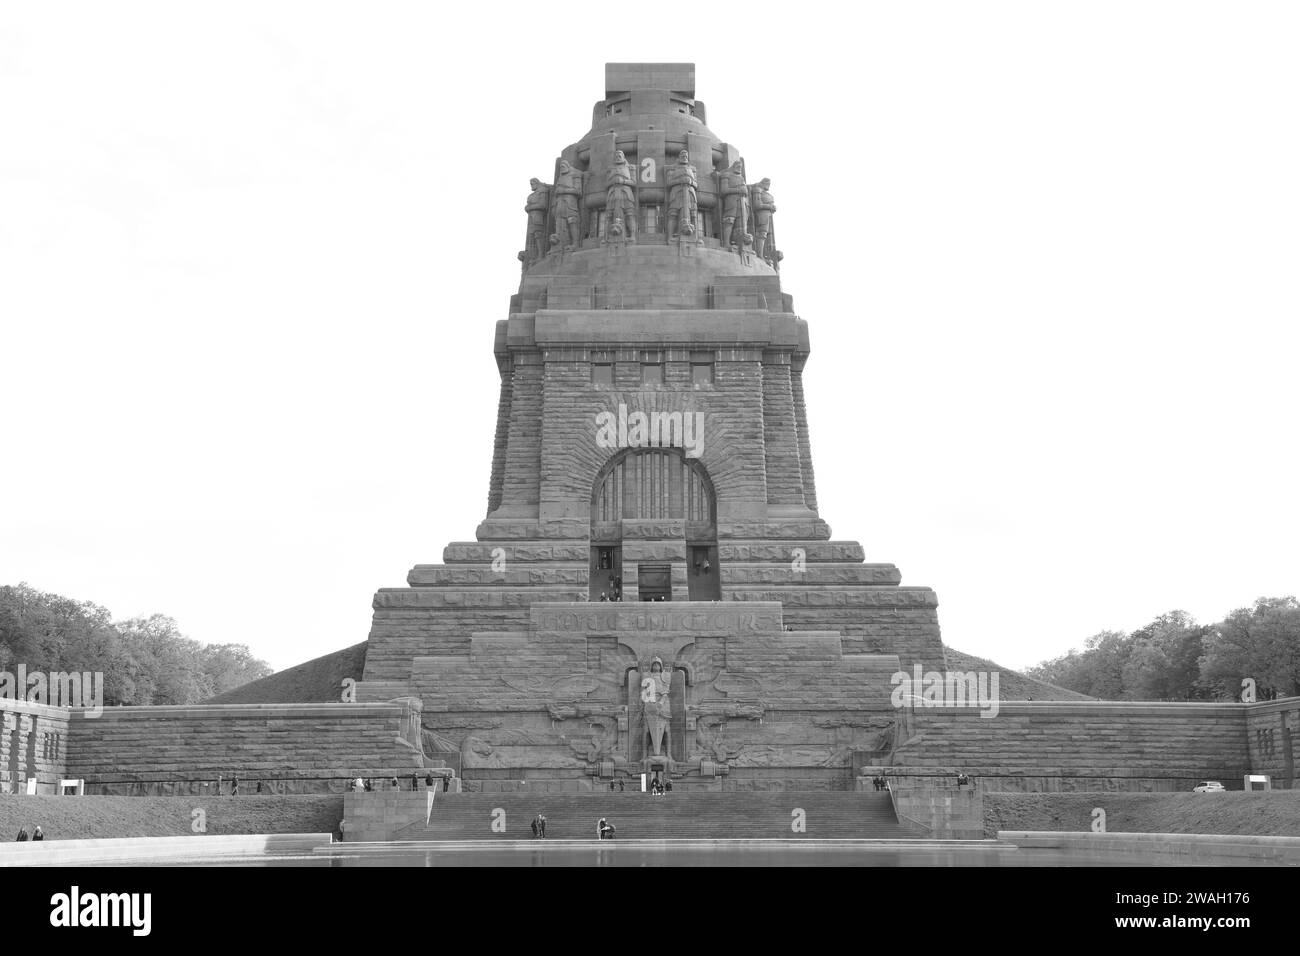 Denkmal für die Völkerschlacht in Leipzig vor bewölktem Himmel in Graustufen Stockfoto